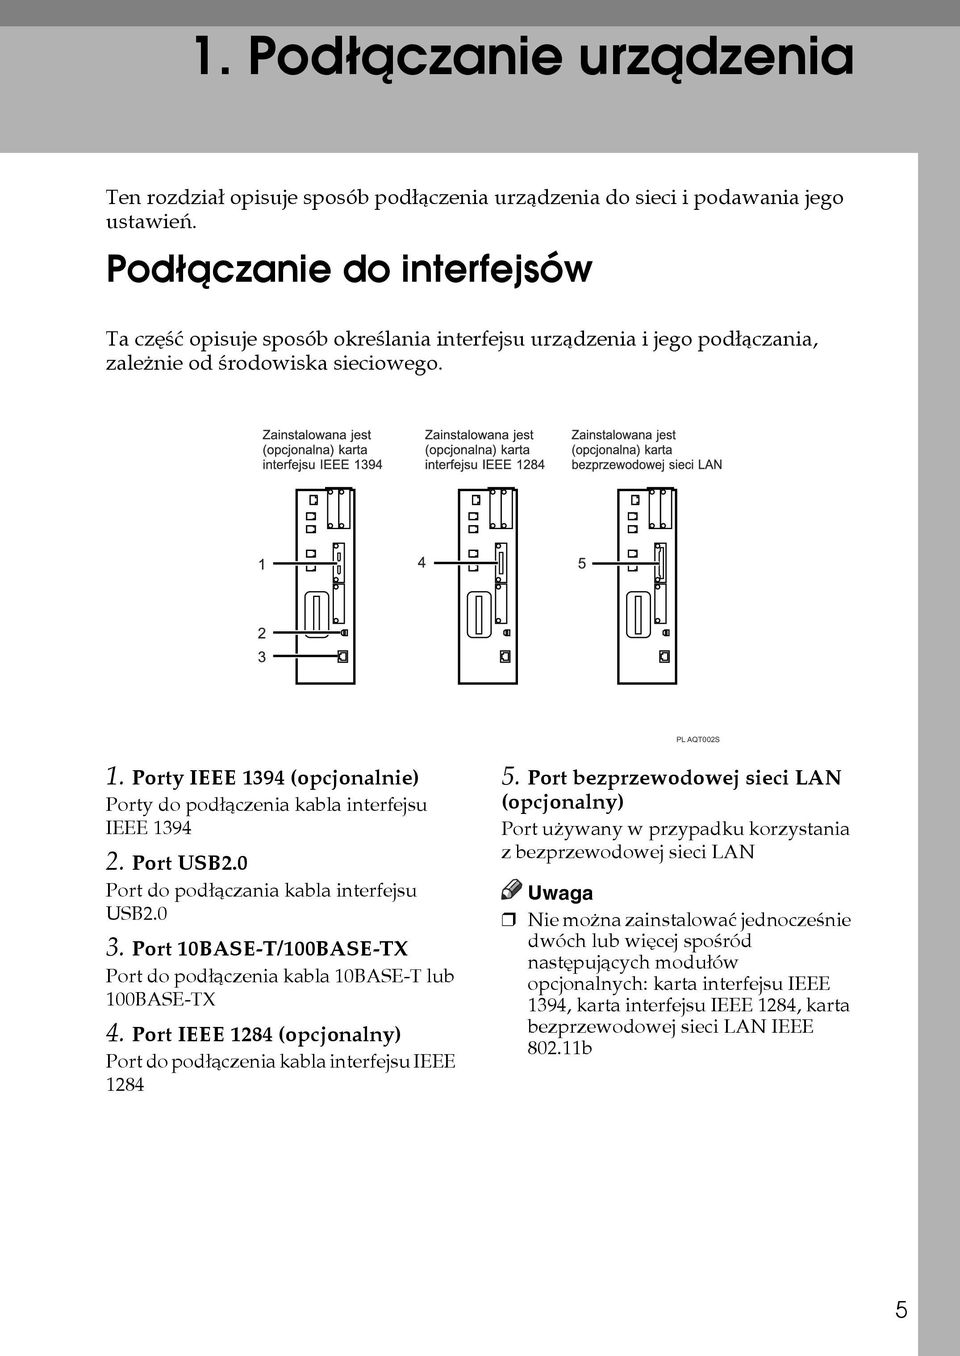 Porty IEEE 1394 (opcjonalnie) Porty do podâàczenia kabla interfejsu IEEE 1394 2. Port USB2.0 Port do podâàczania kabla interfejsu USB2.0 3.